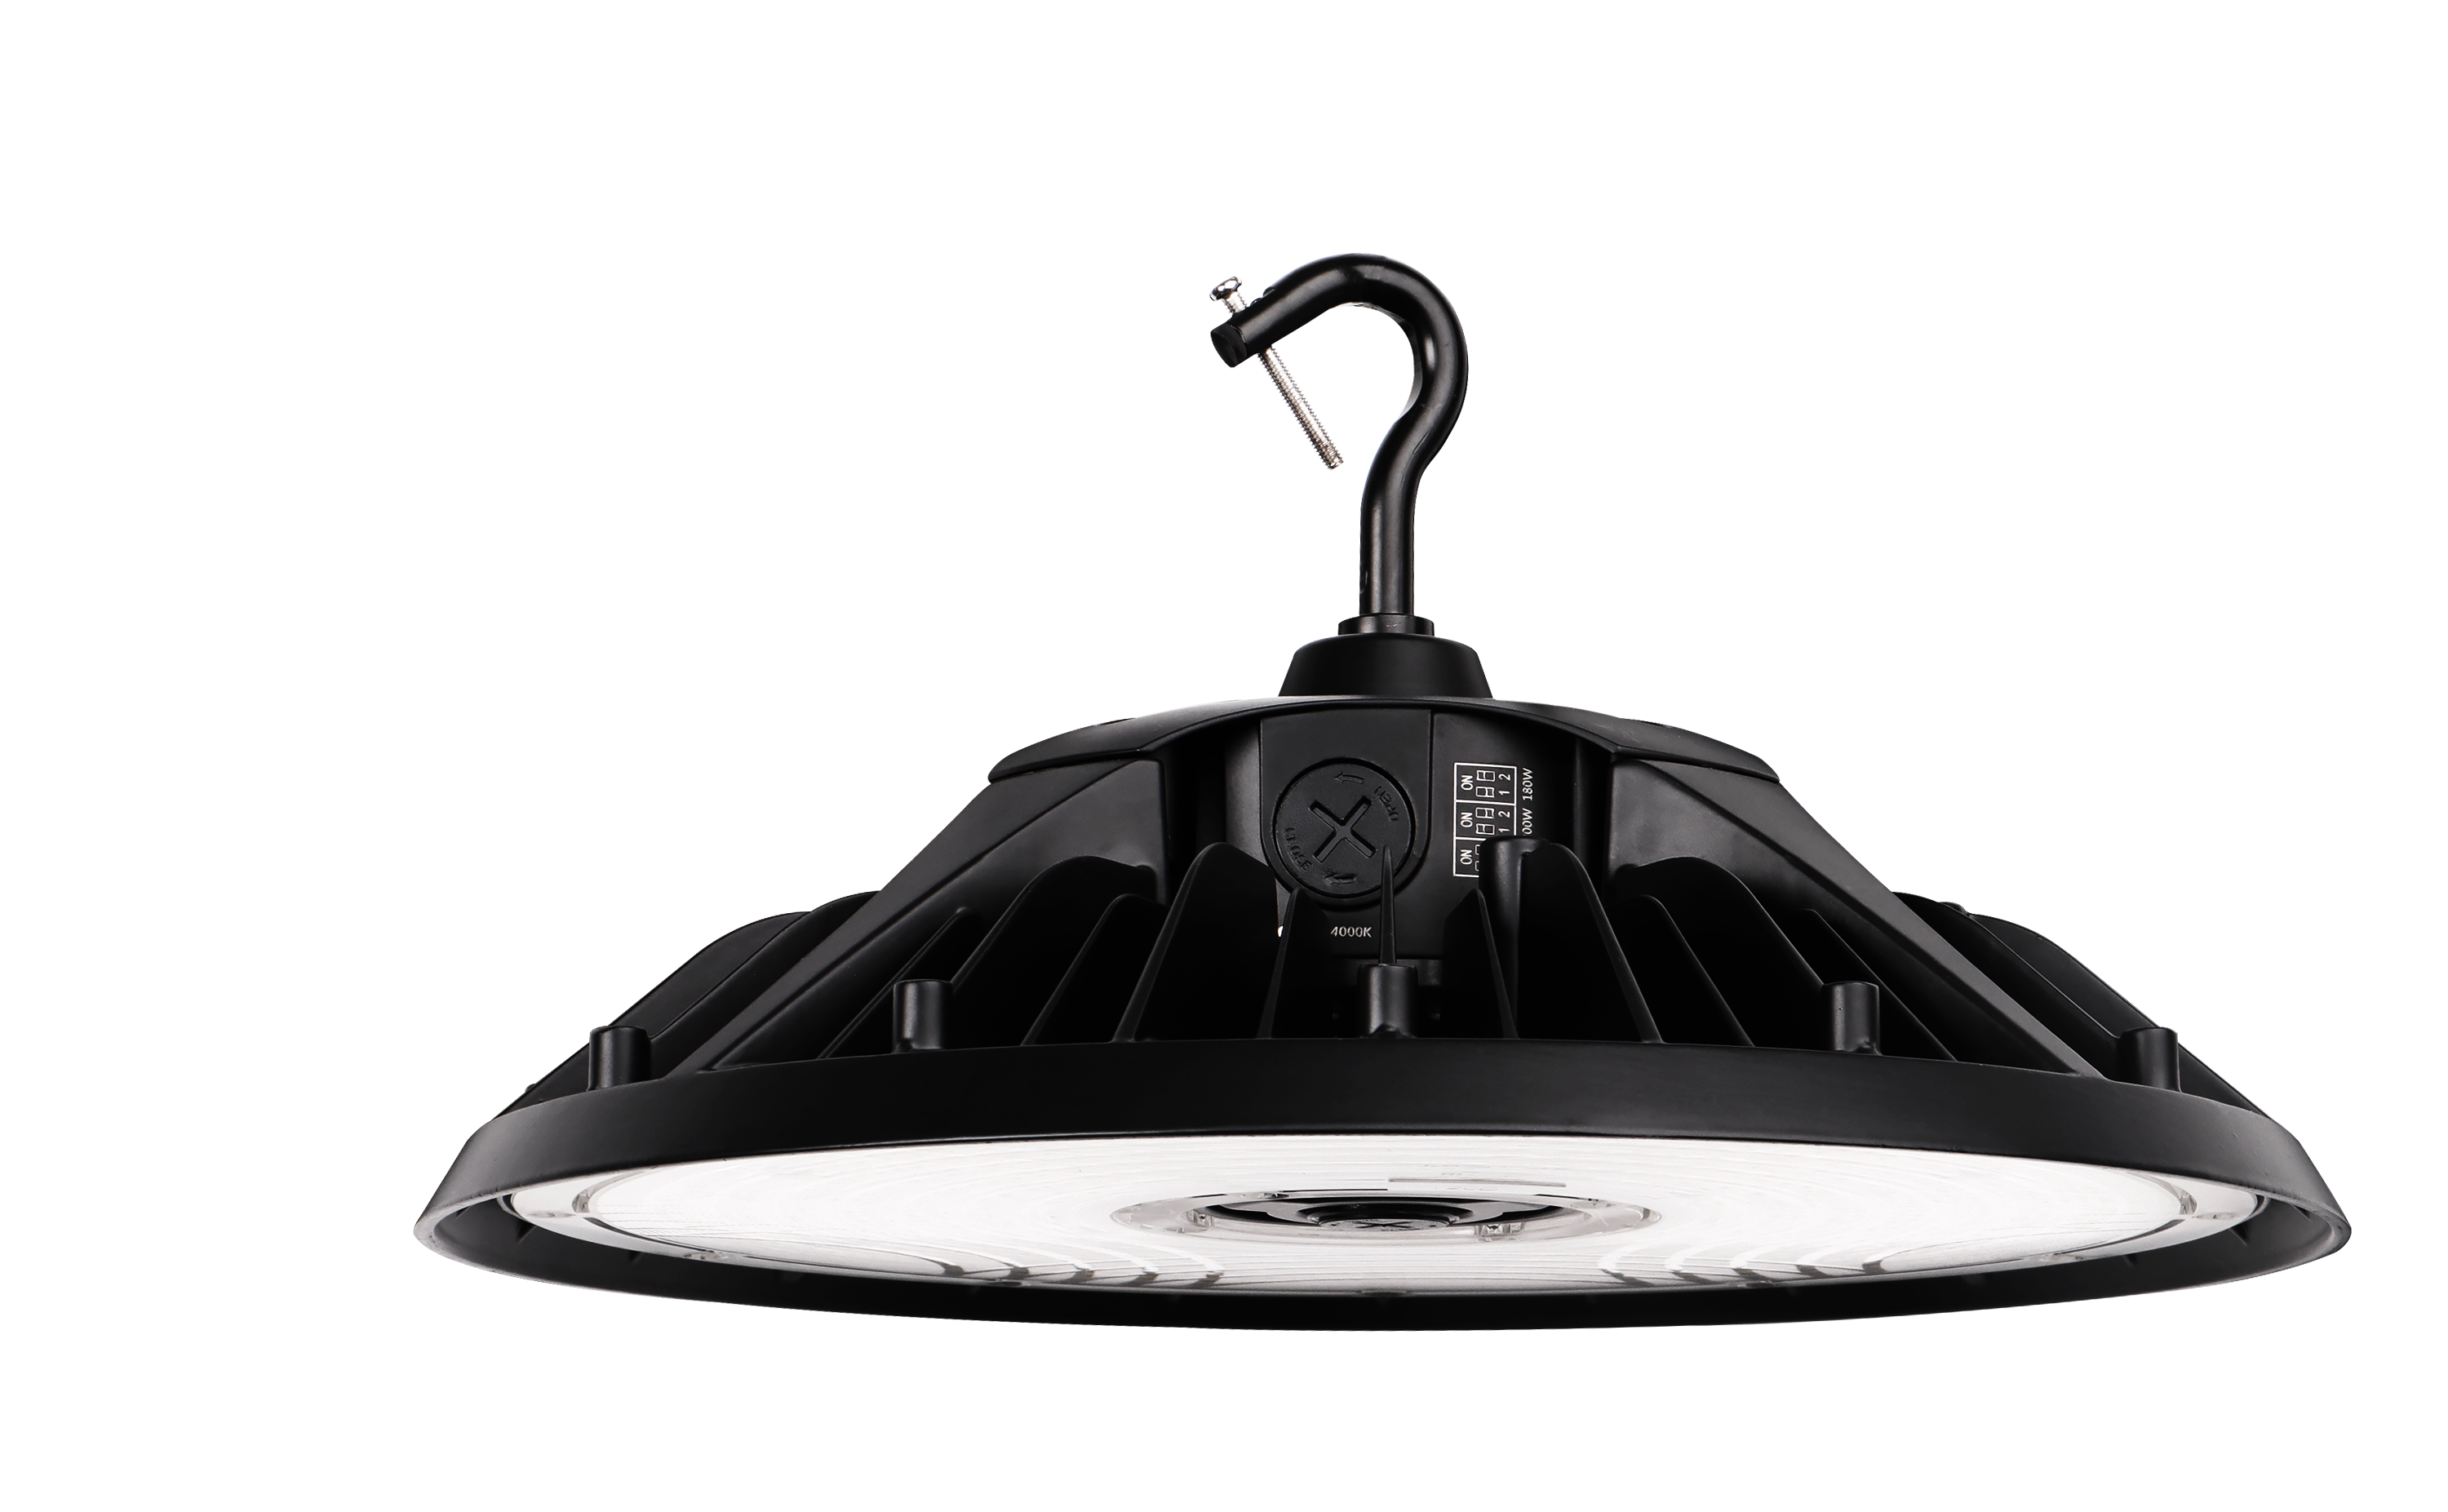 240W High-Efficiency LED UFO Light, 5000K, 36,240 Lumens, AC277-480V, 0-10V Dimmable, DLC 5.1 Certified - Eco LED Lightings 